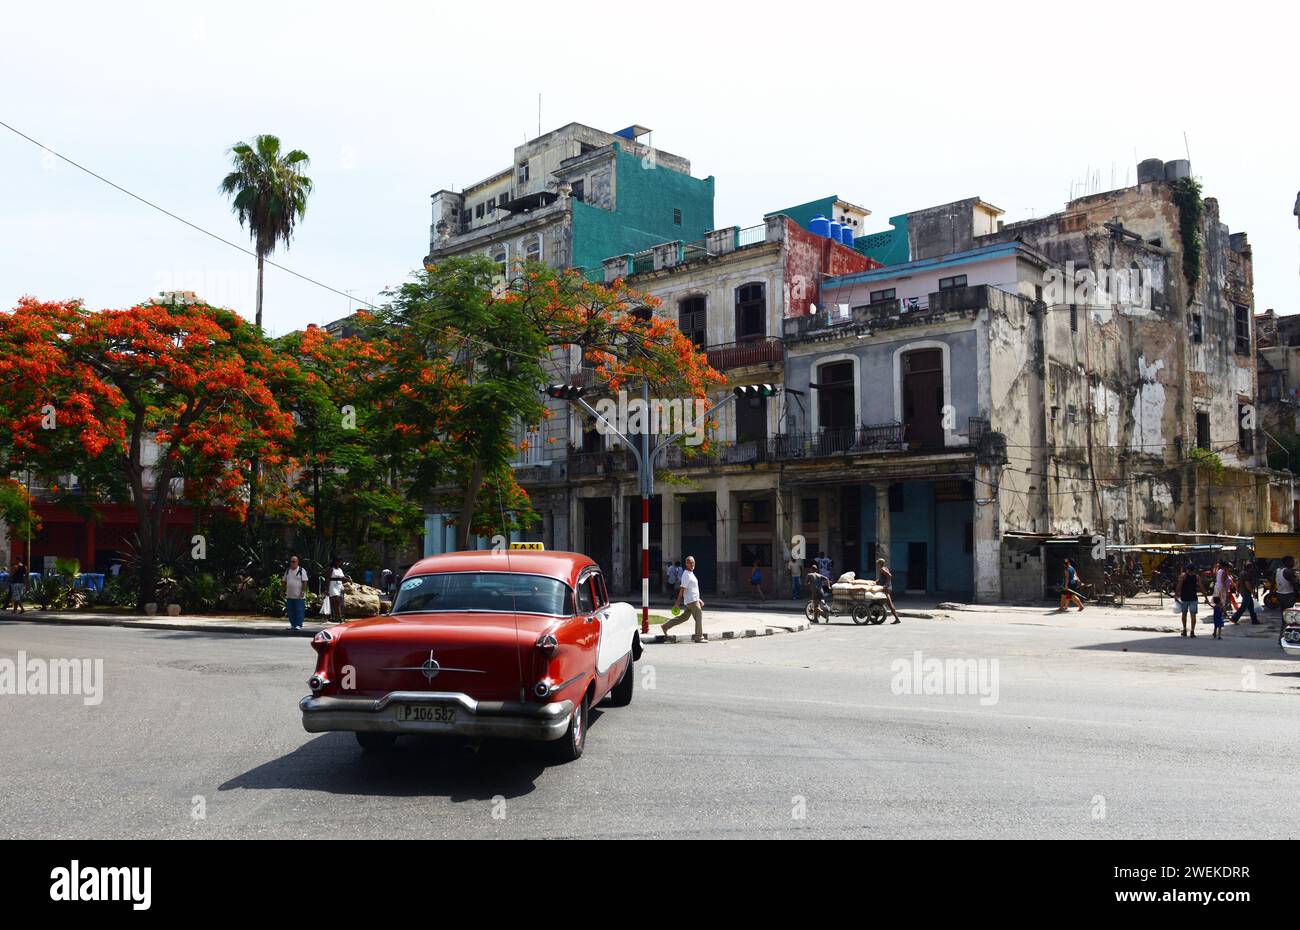 An Oldsmobile 98 in Old Havana, Cuba. Stock Photo